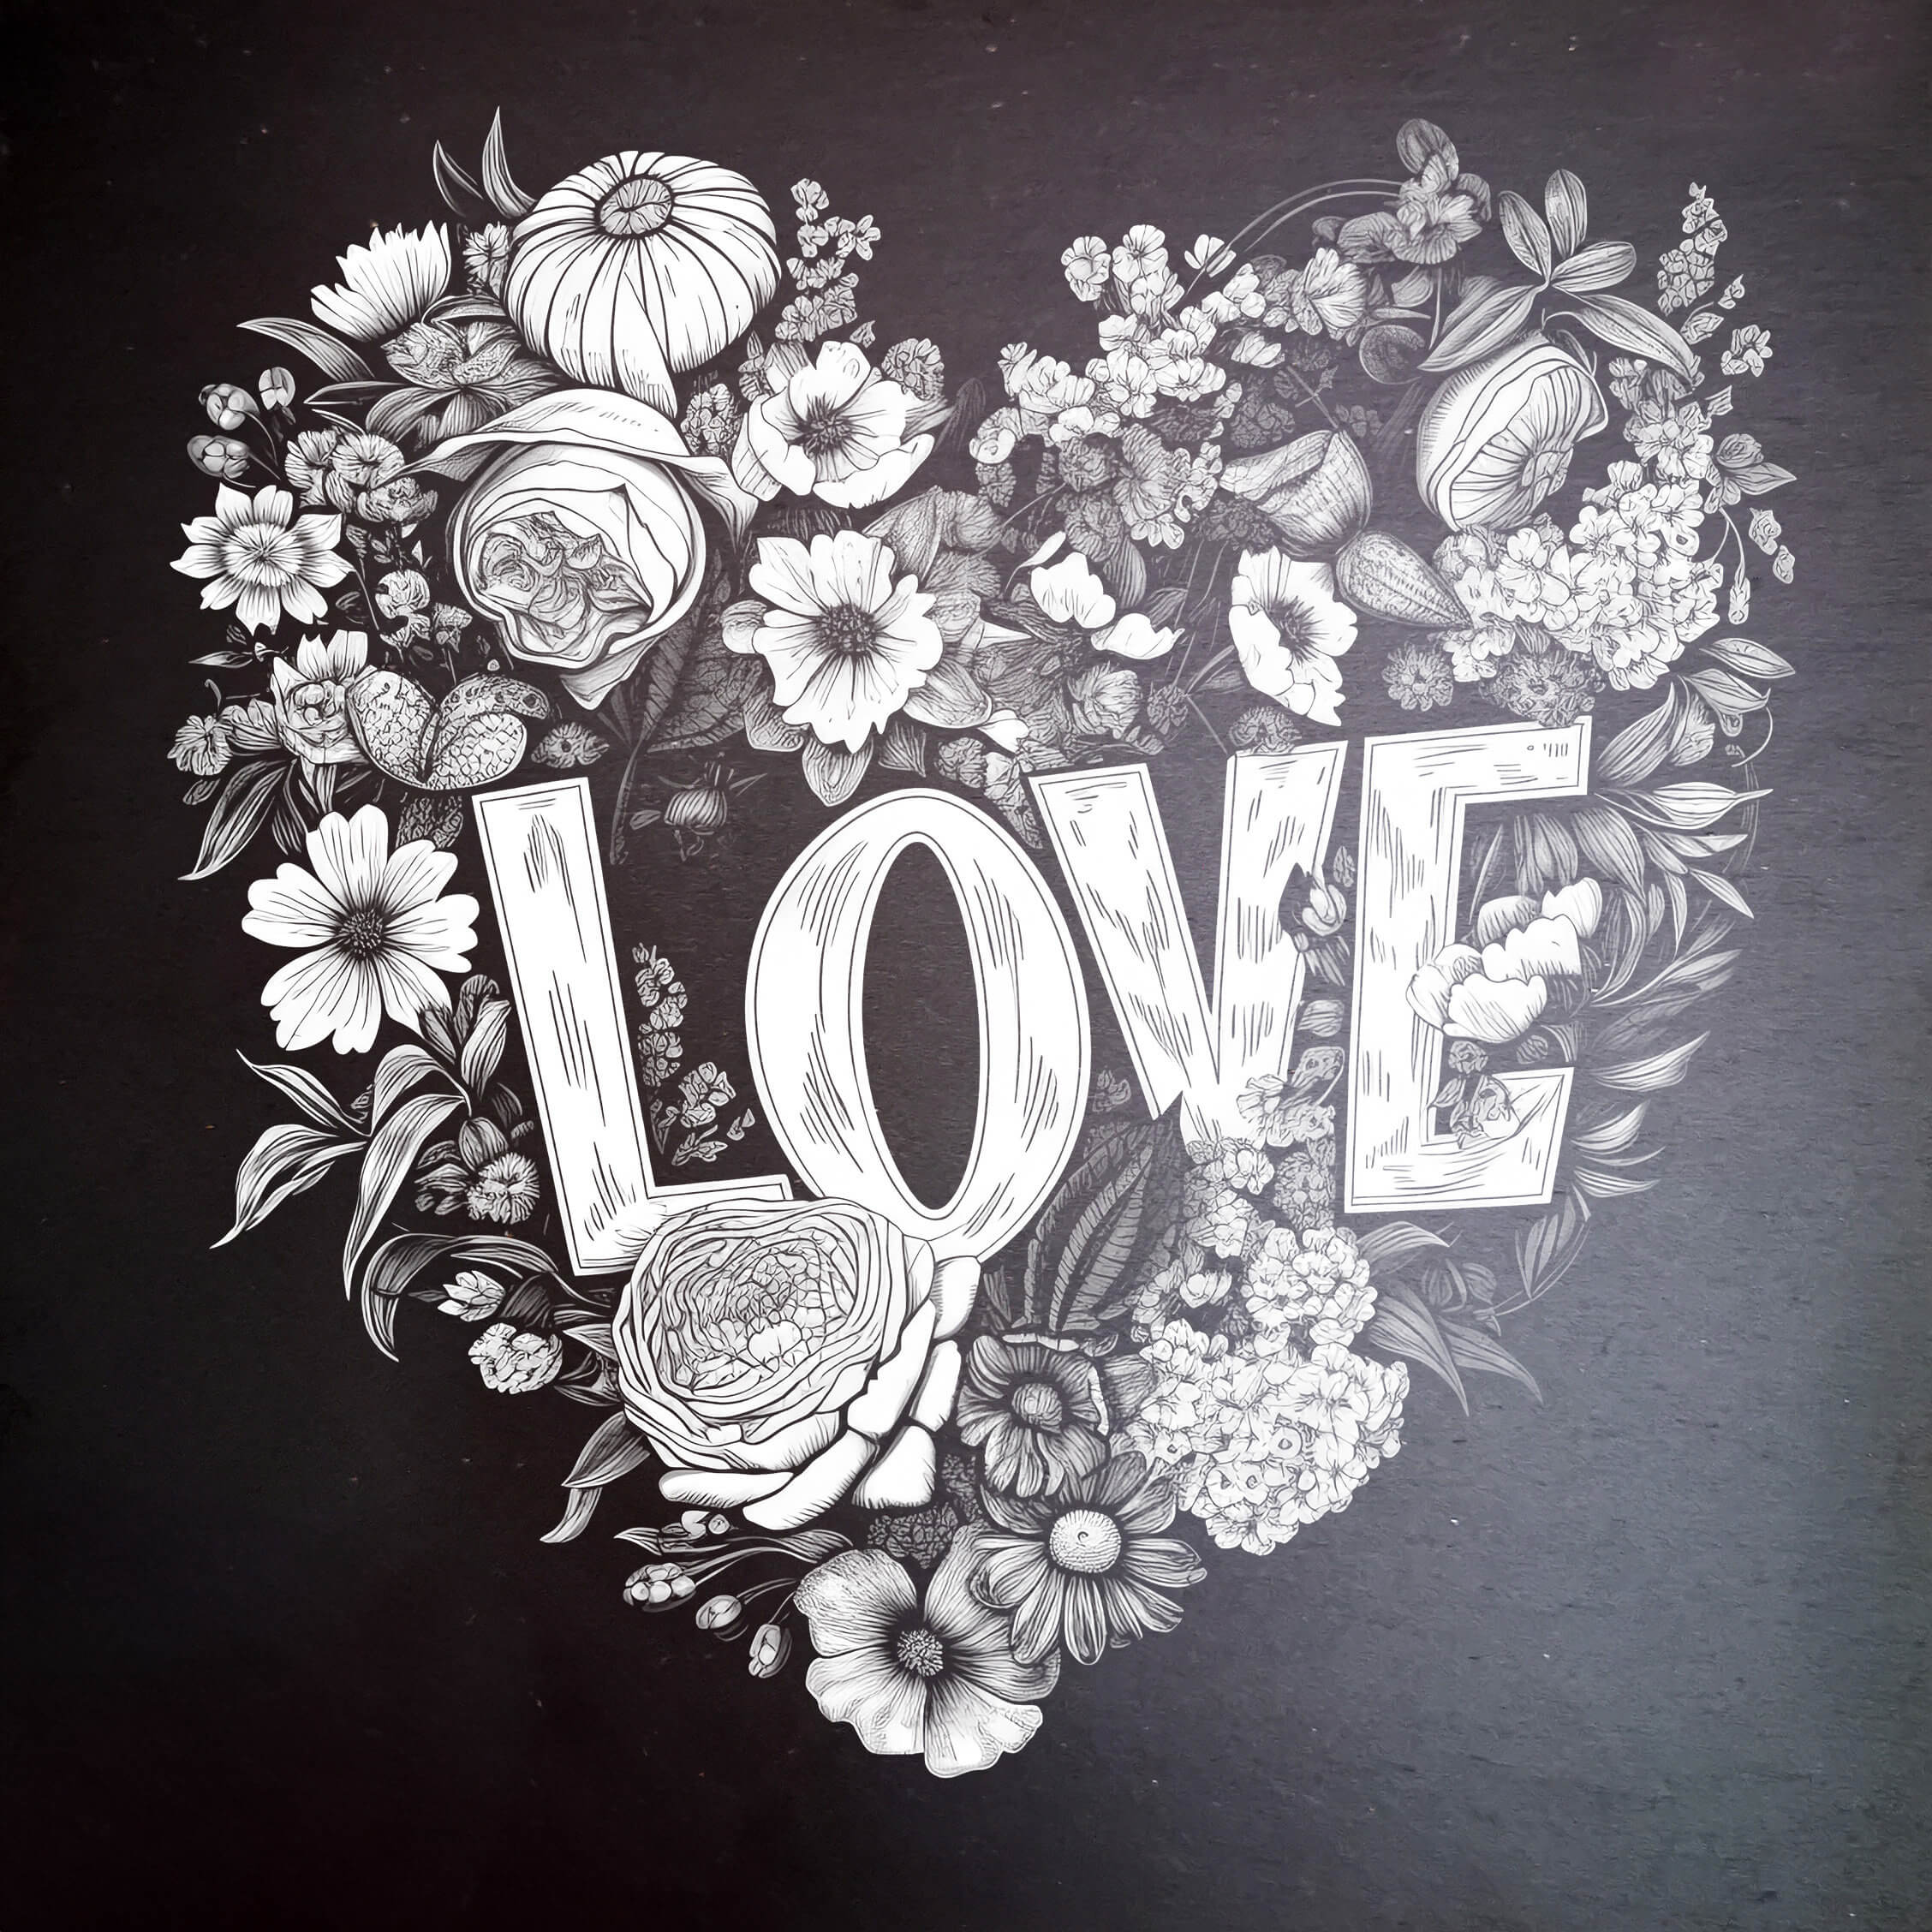 Slate - LOVE: Embrace Full of Love